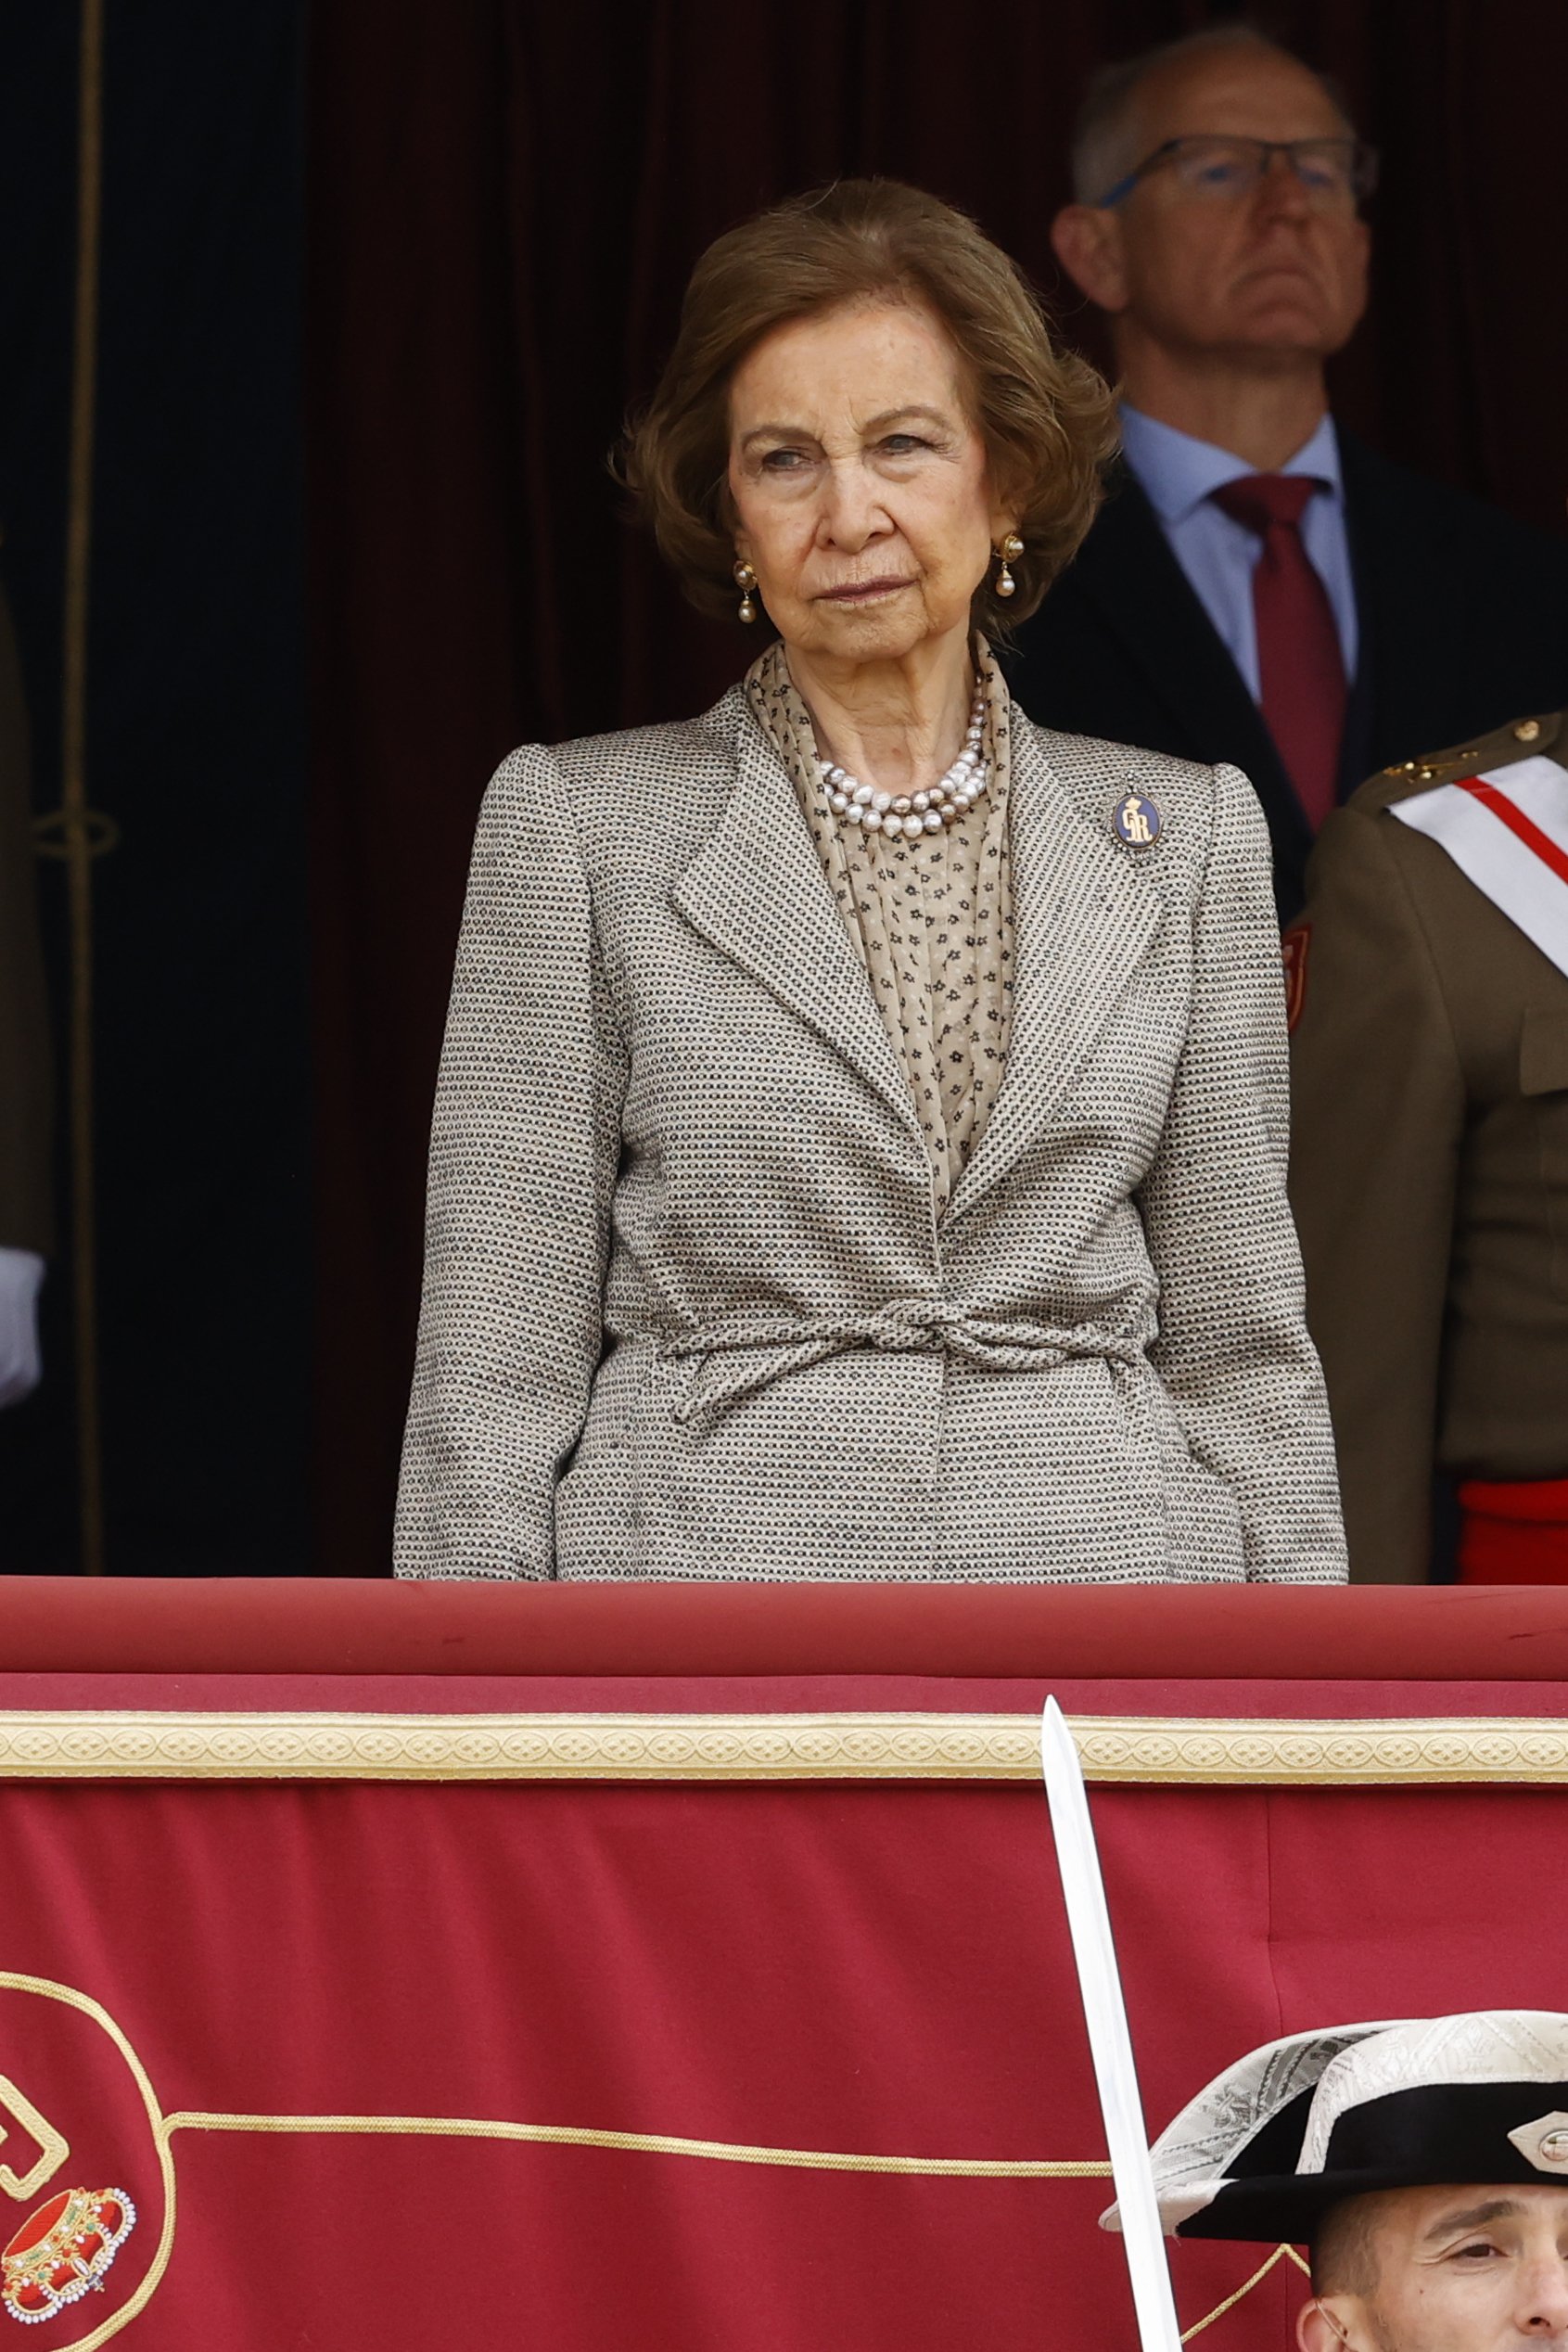 La reina Sofía més seriosa reapareix en una jura de bandera molt particular